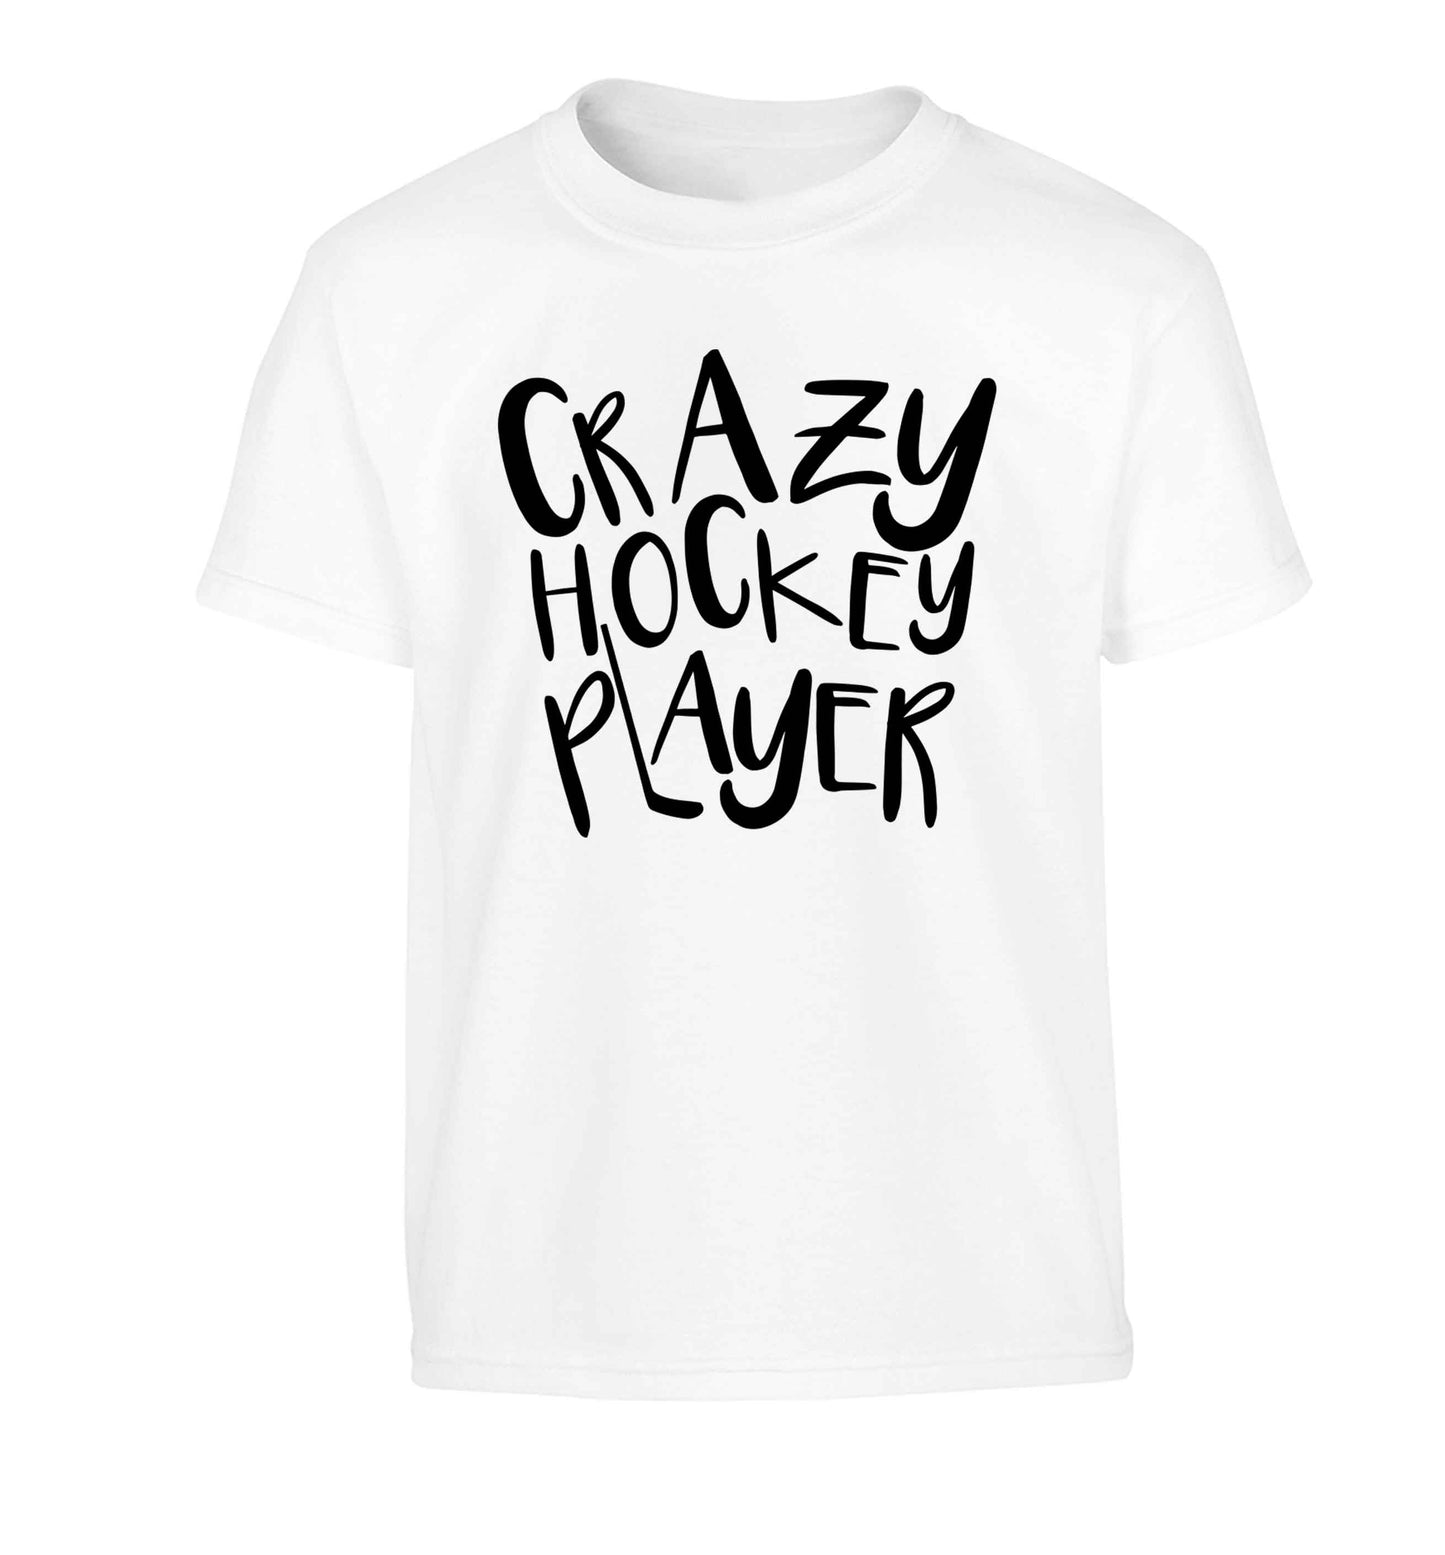 Crazy hockey player Children's white Tshirt 12-13 Years